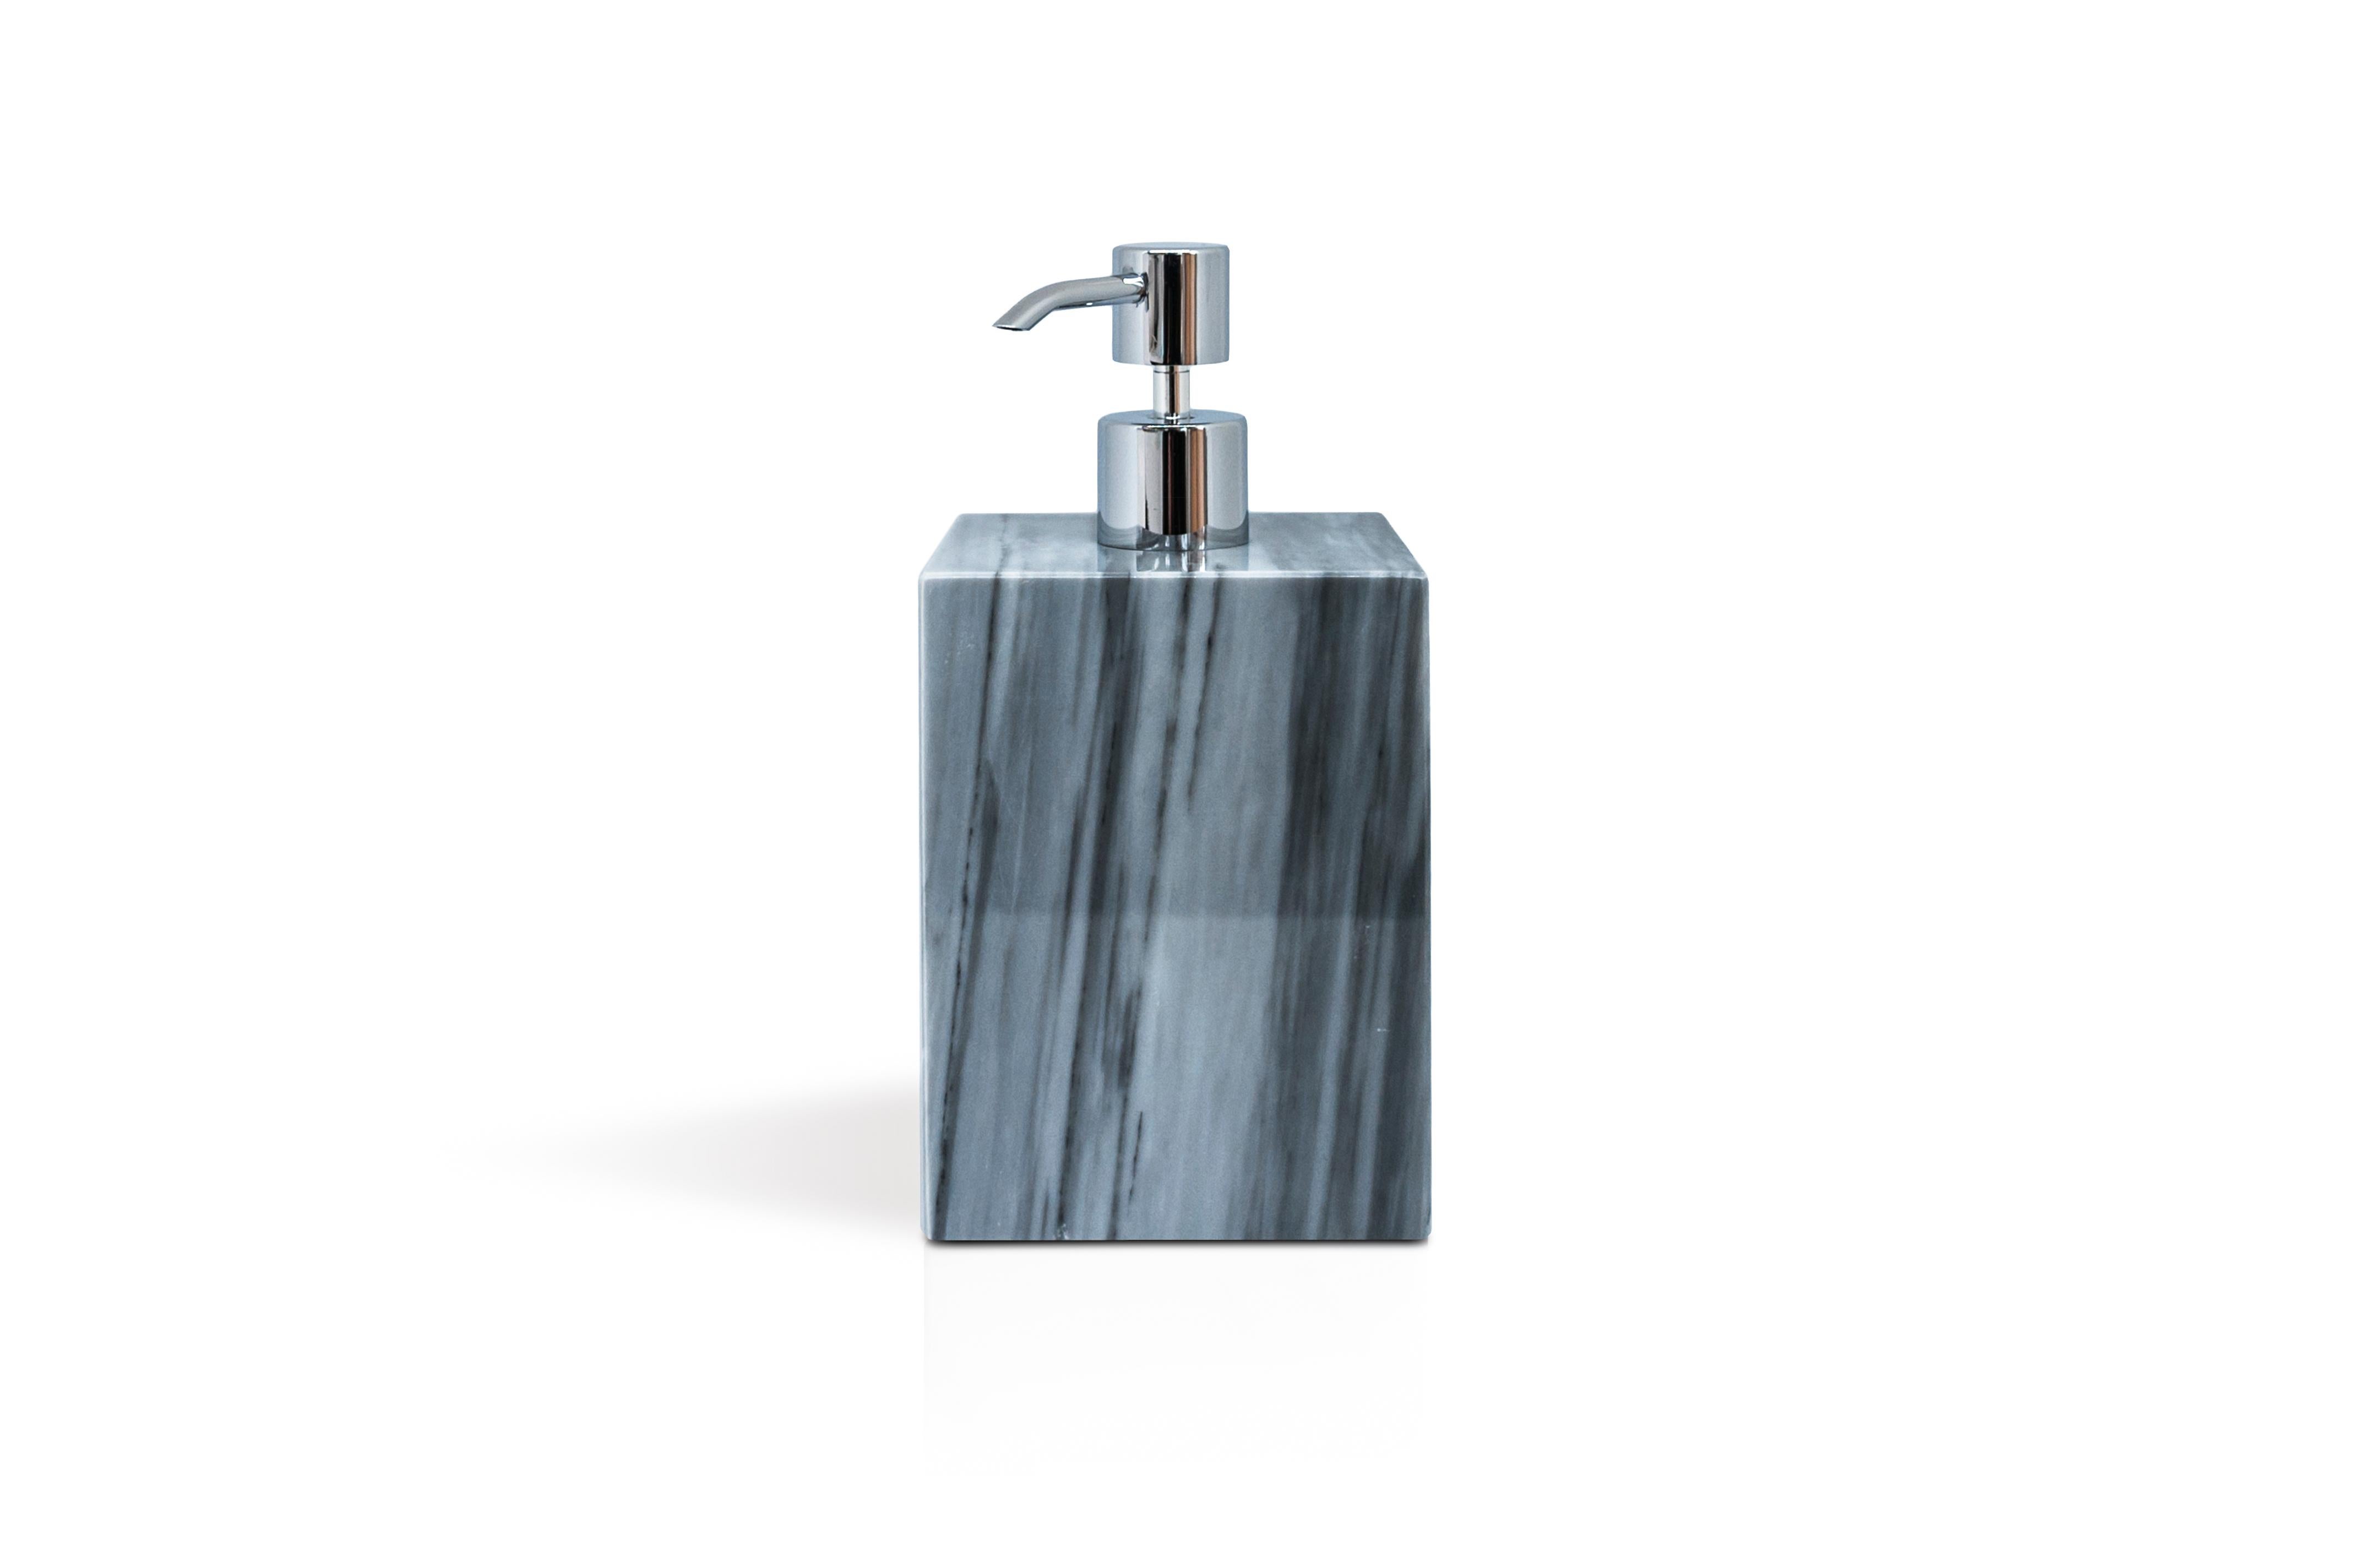 Ein quadratisches Set für das Badezimmer aus grauem Bardiglio-Marmor, bestehend aus: einem Seifenspender (9 x 9 x 19 cm), einer Seifenschale (10 x 13 x 2 cm), einem Zahnbürstenhalter (8,5 x 8,5 x 12 cm), einem Dosenhalter mit Deckel (9,5 x 9,5 x 9,5